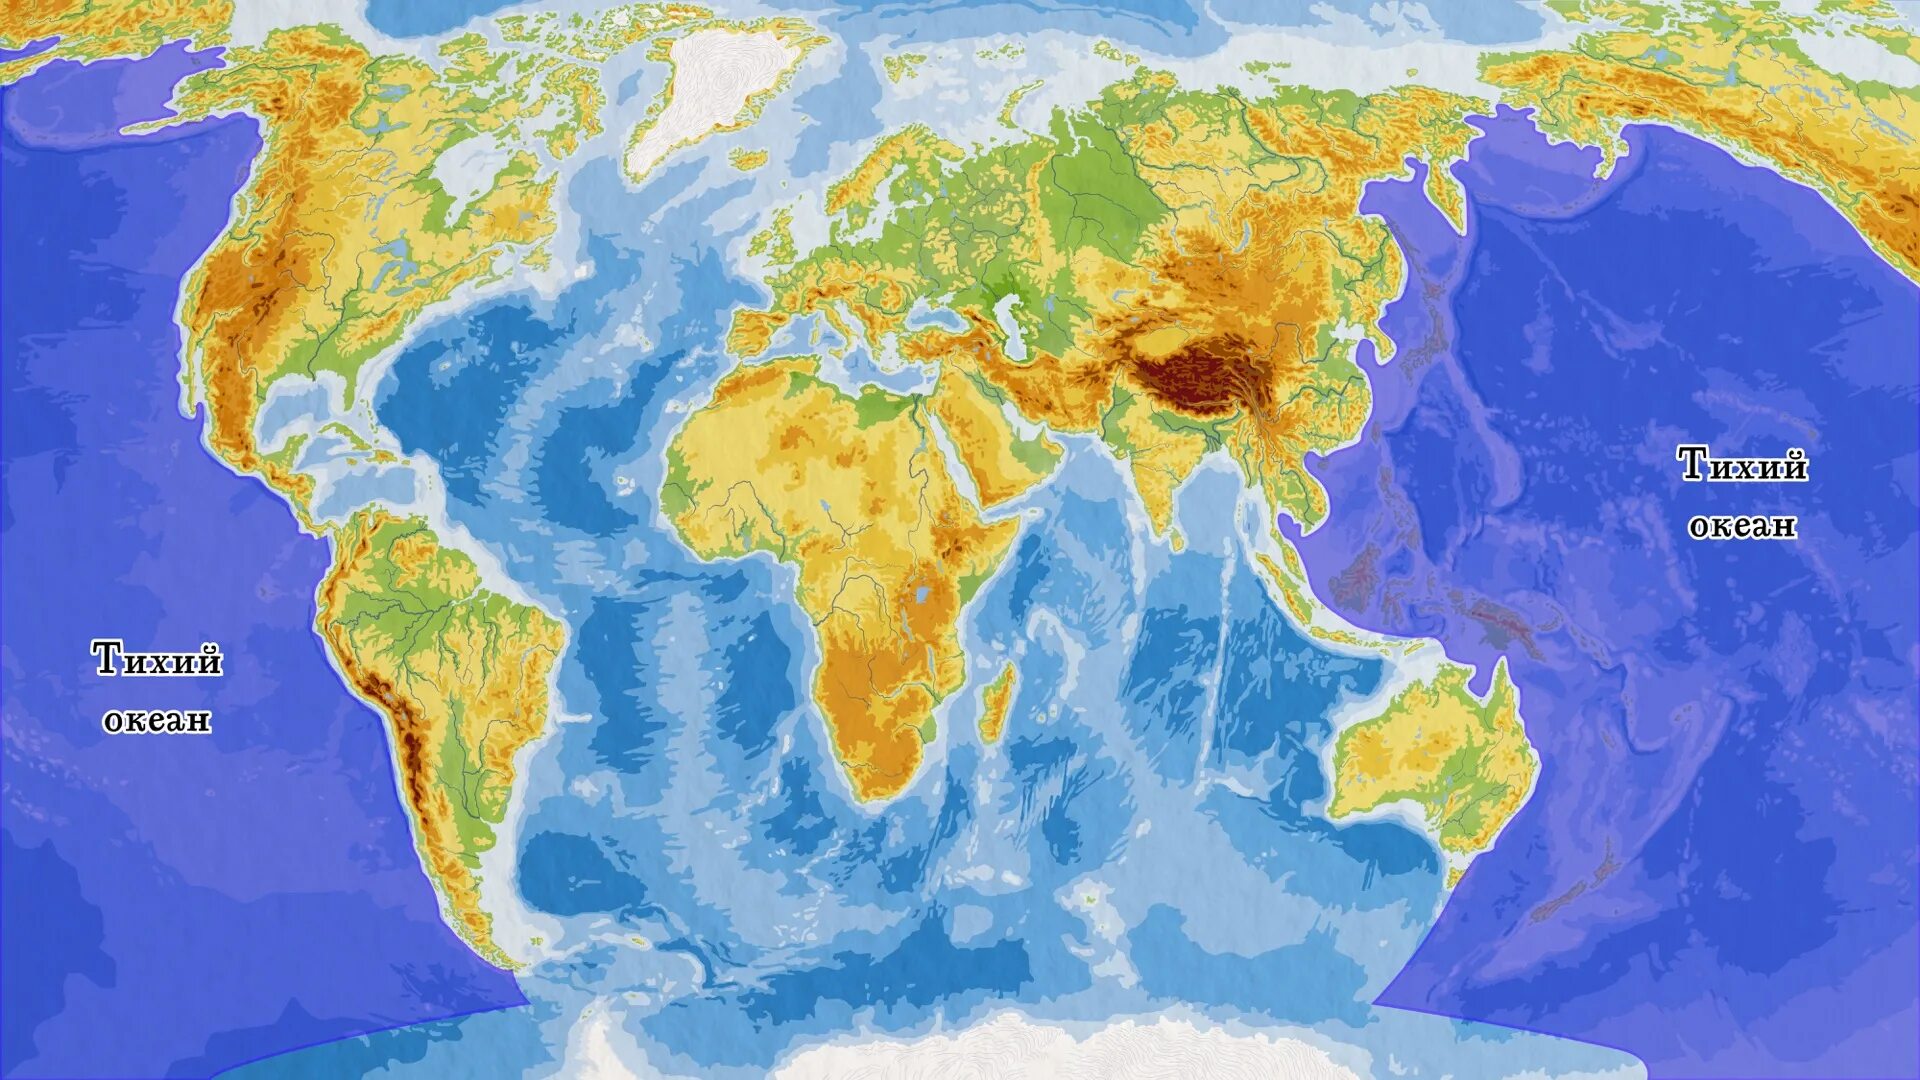 Что можно увидеть на карте. Объекты гидросферы на карте. Тихий океан на карте.